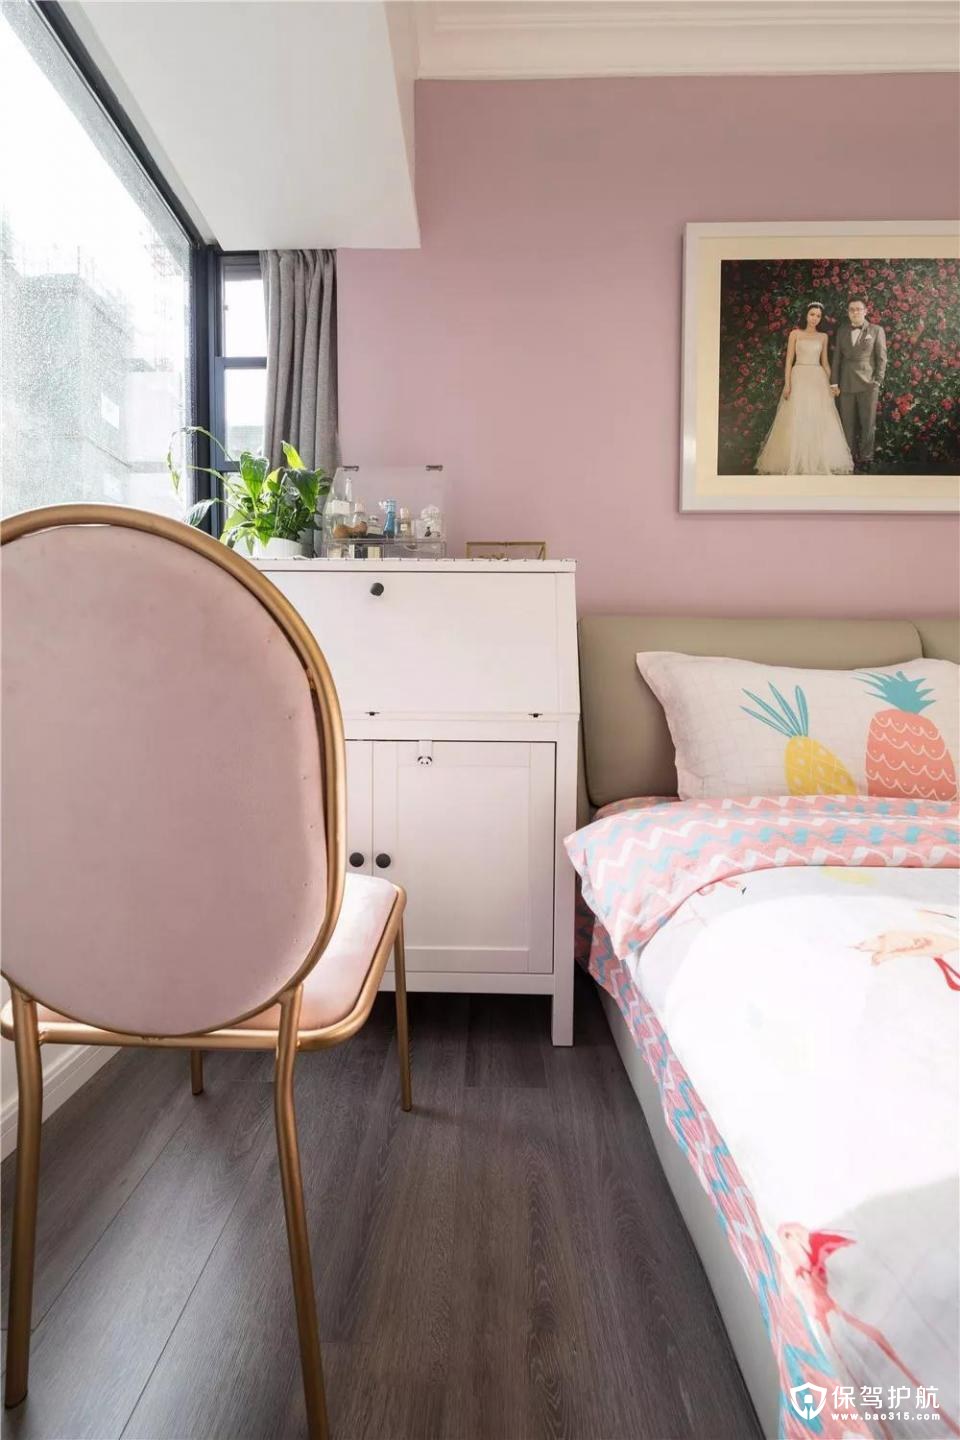 床头的背景选择了她喜欢的藕粉色，和其他白色墙面进行对比，让整个空间既温馨又不浮夸。